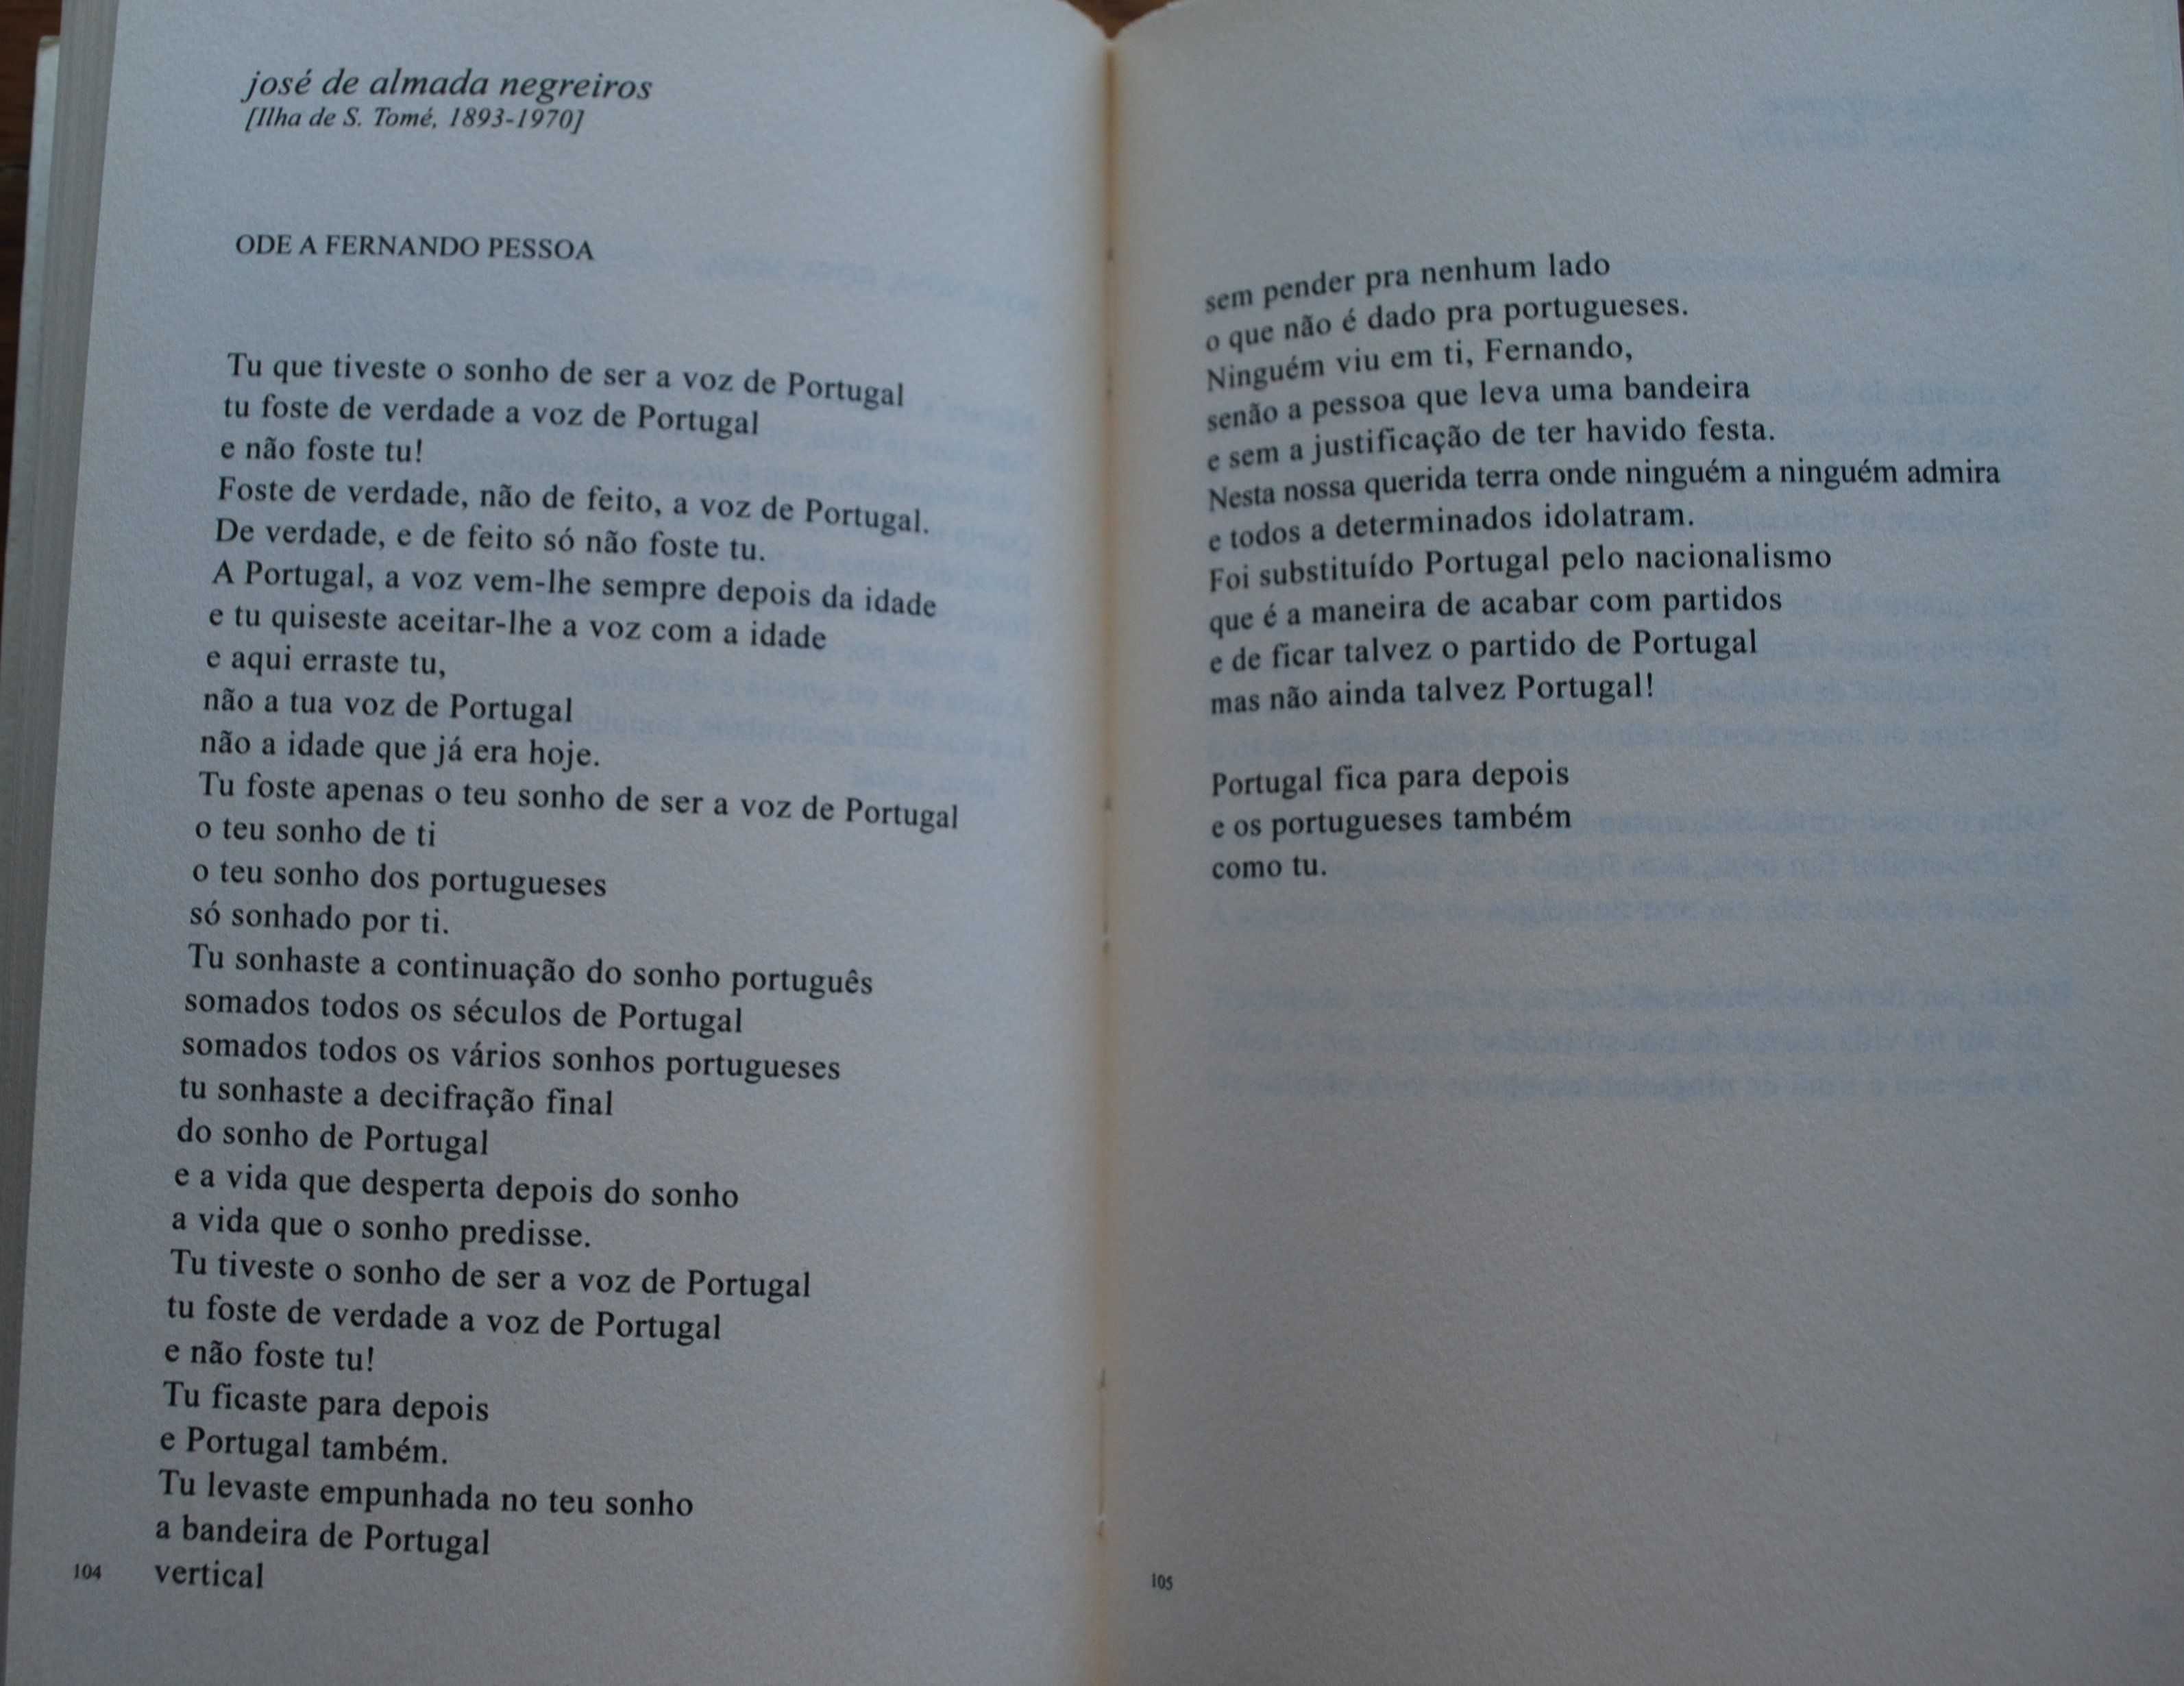 Os Poemas da Minha Vida de Mário Soares